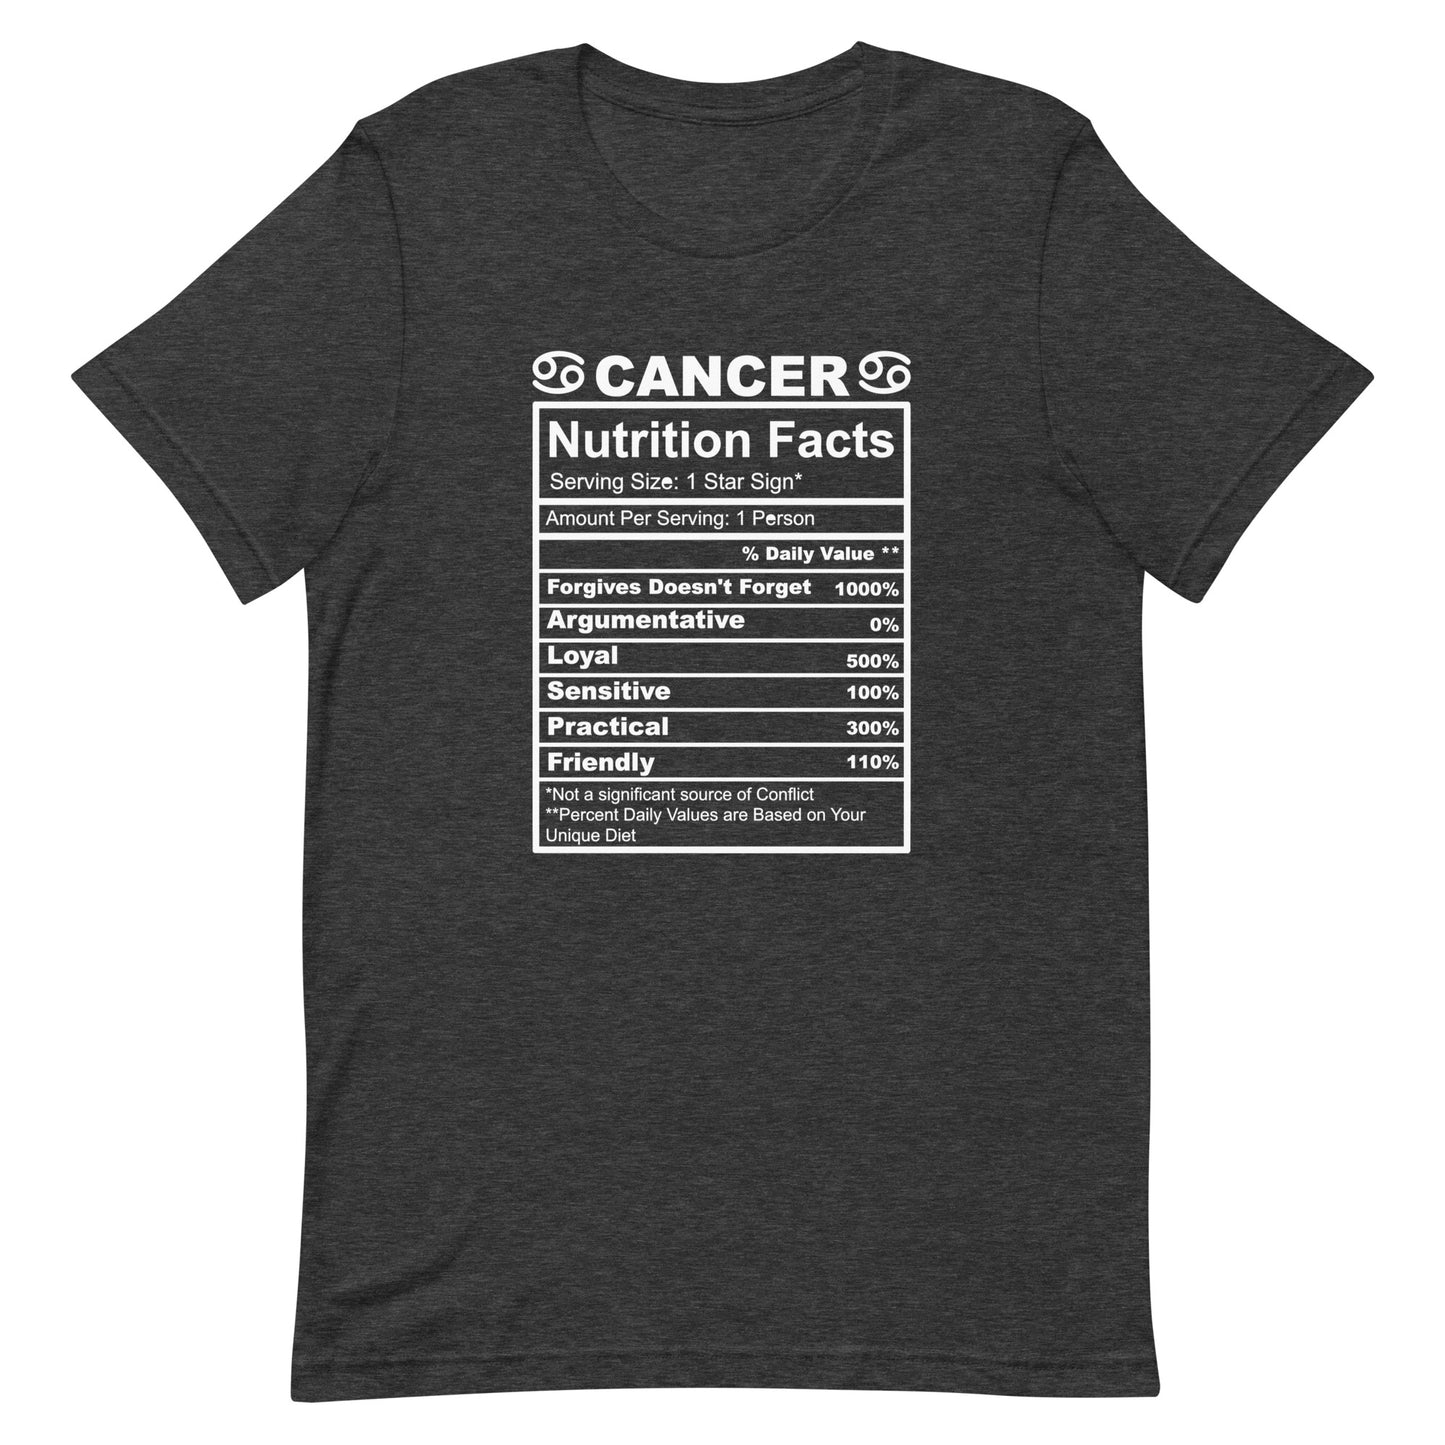 CANCER - L-XL - Unisex T-Shirt (white letters)